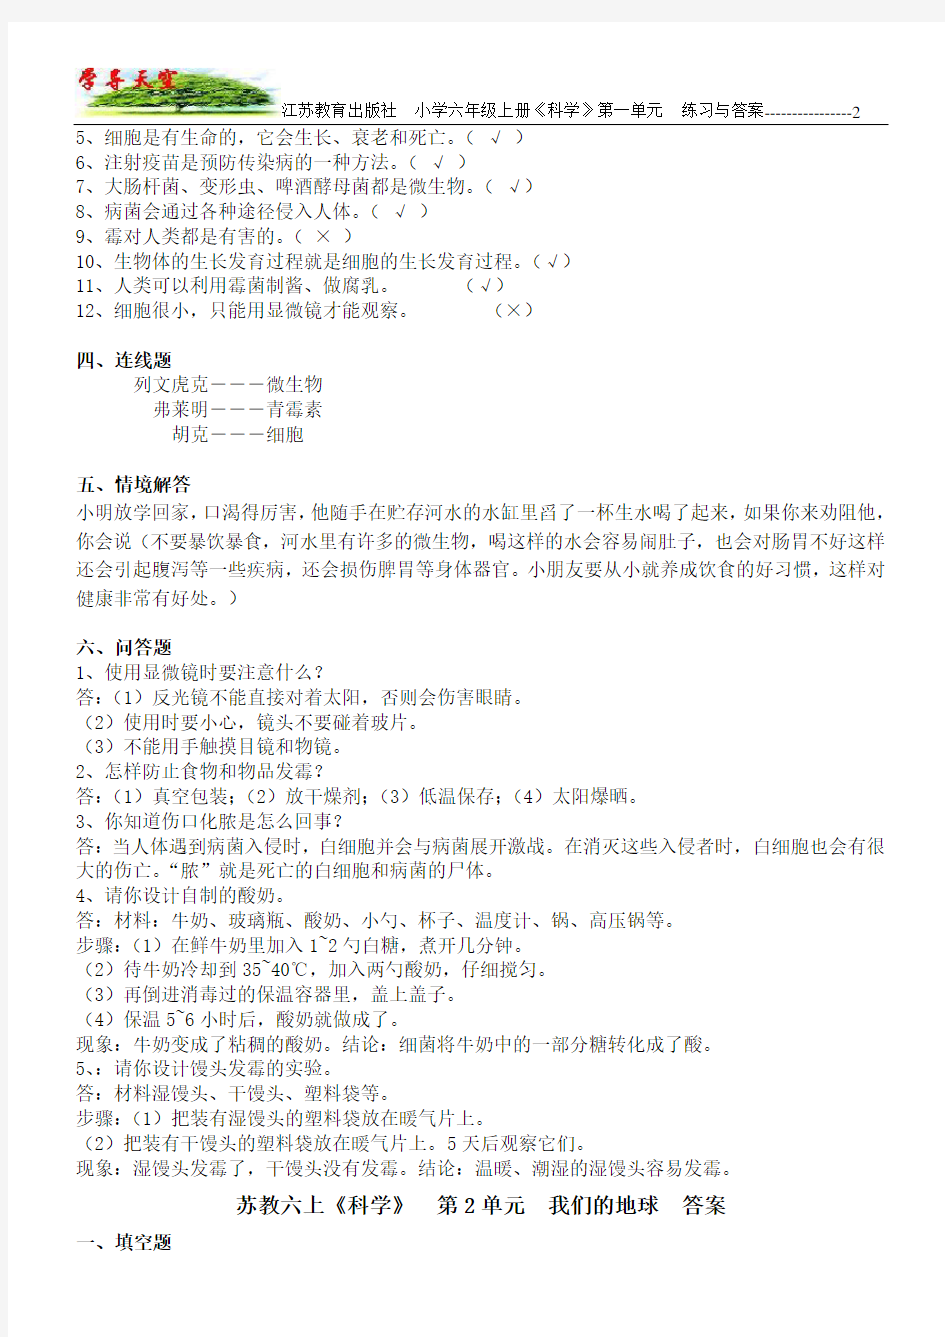 江苏教育出版社_小学六年级上册《科学》_1-5单元答案